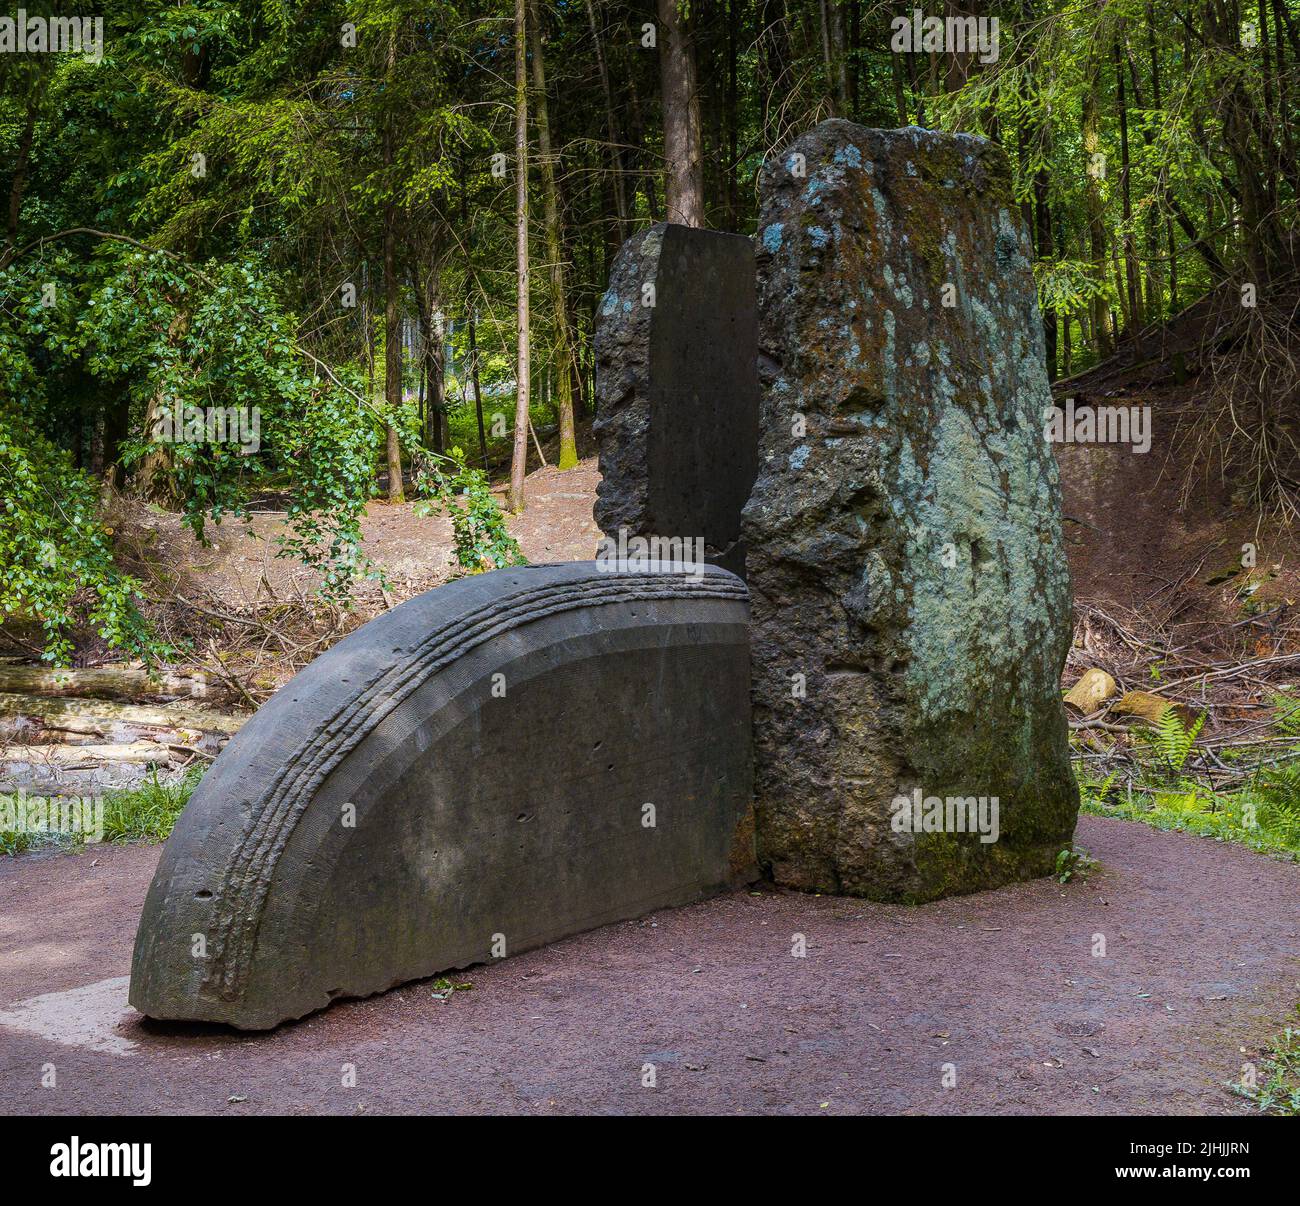 "Cuore di pietra", Sentiero delle sculture, Foresta di Dean Foto Stock